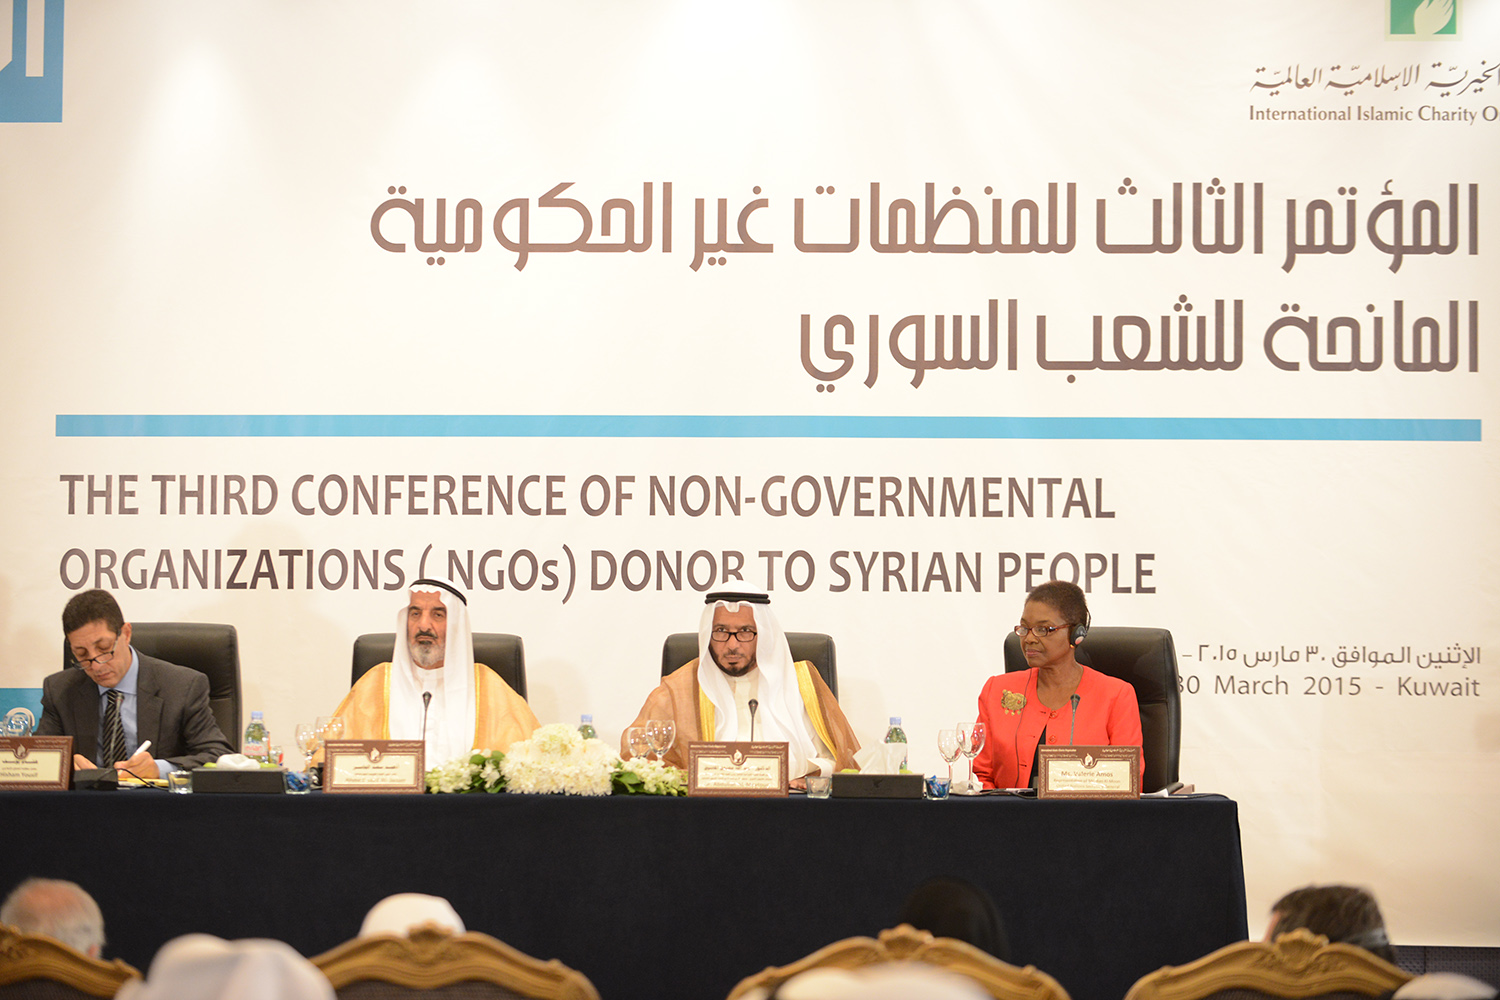 المؤتمر الدولي الثالث للمنظمات المانحة غير الحكومية لدعم الوضع الانساني في سوريا